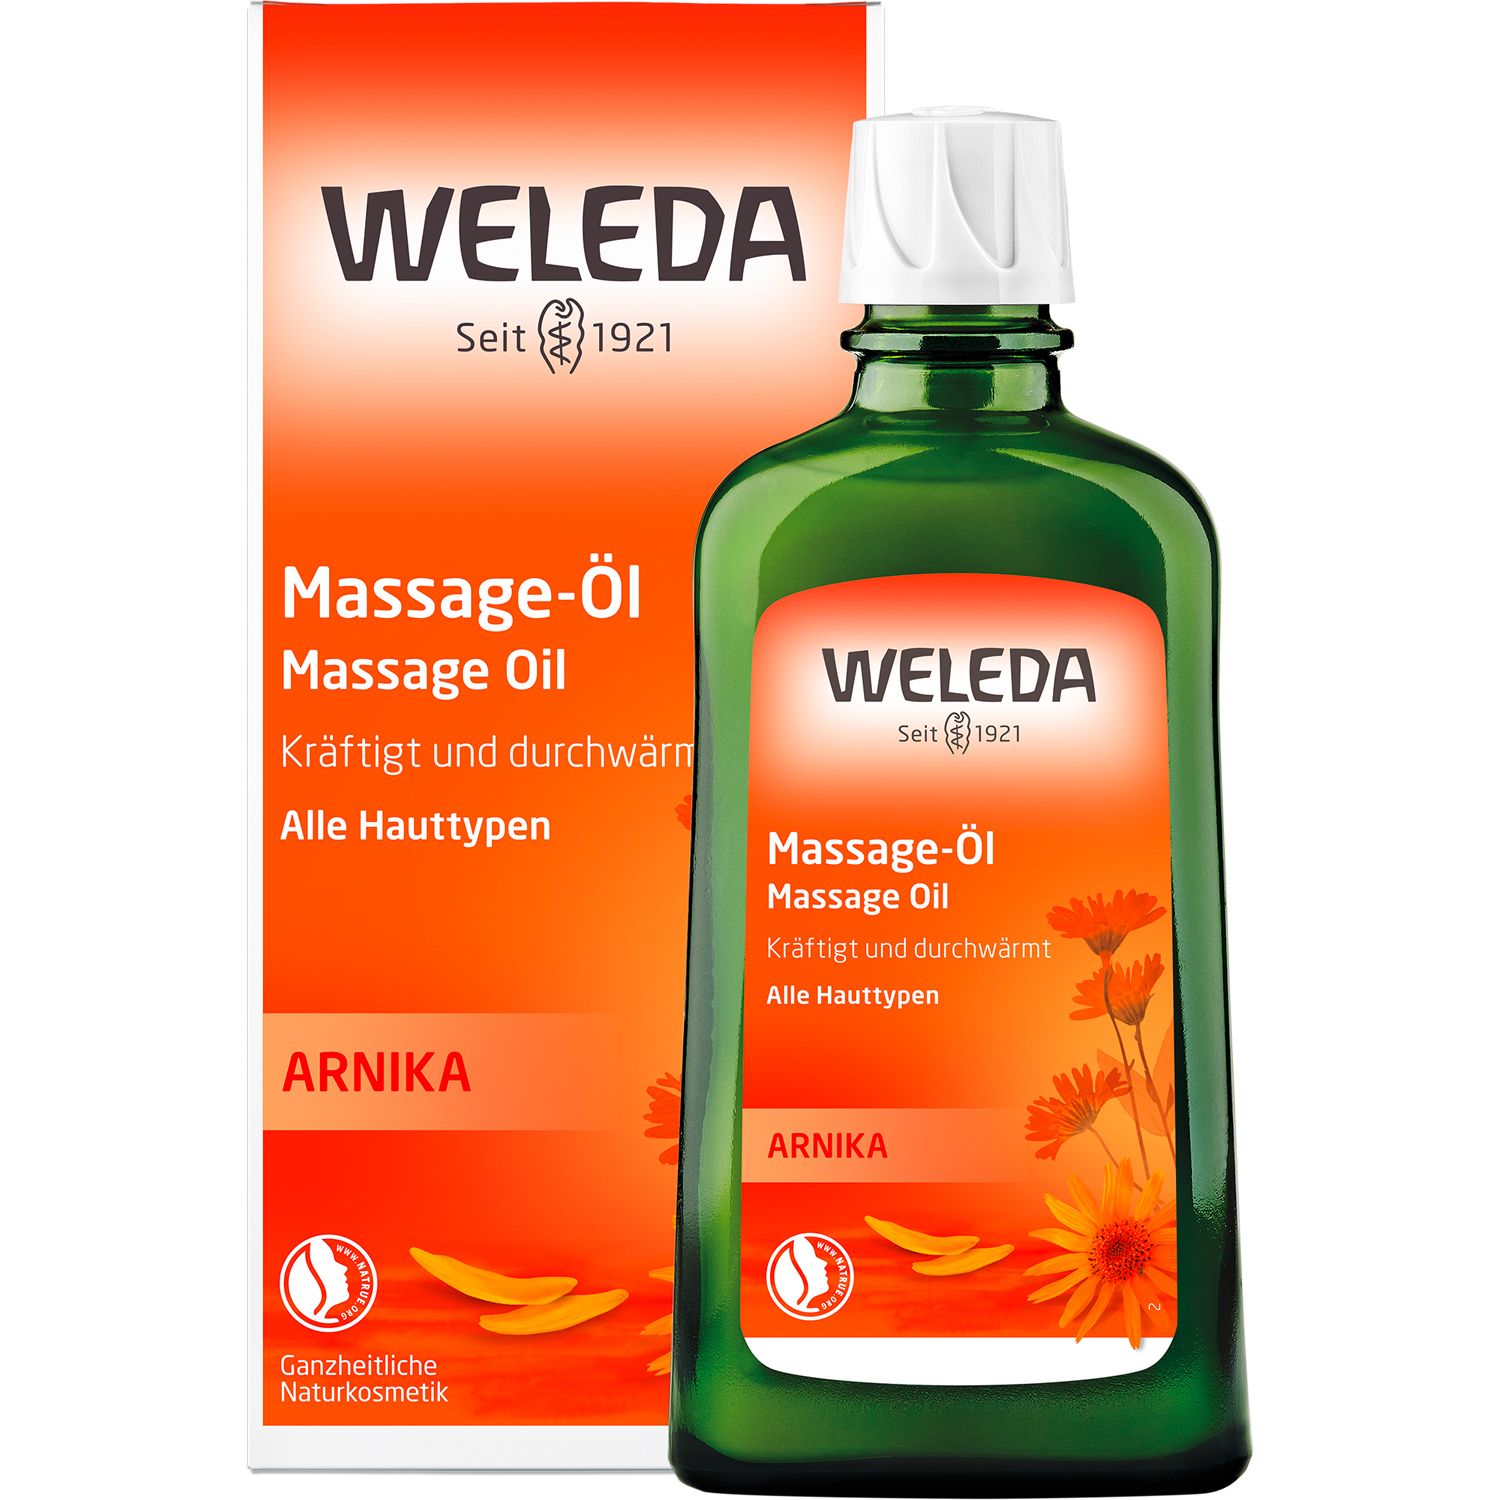 Weleda Massageöl Arnika -  die Massge ist durchblutungsfördernd, durchwärmt und lockert Muskeln